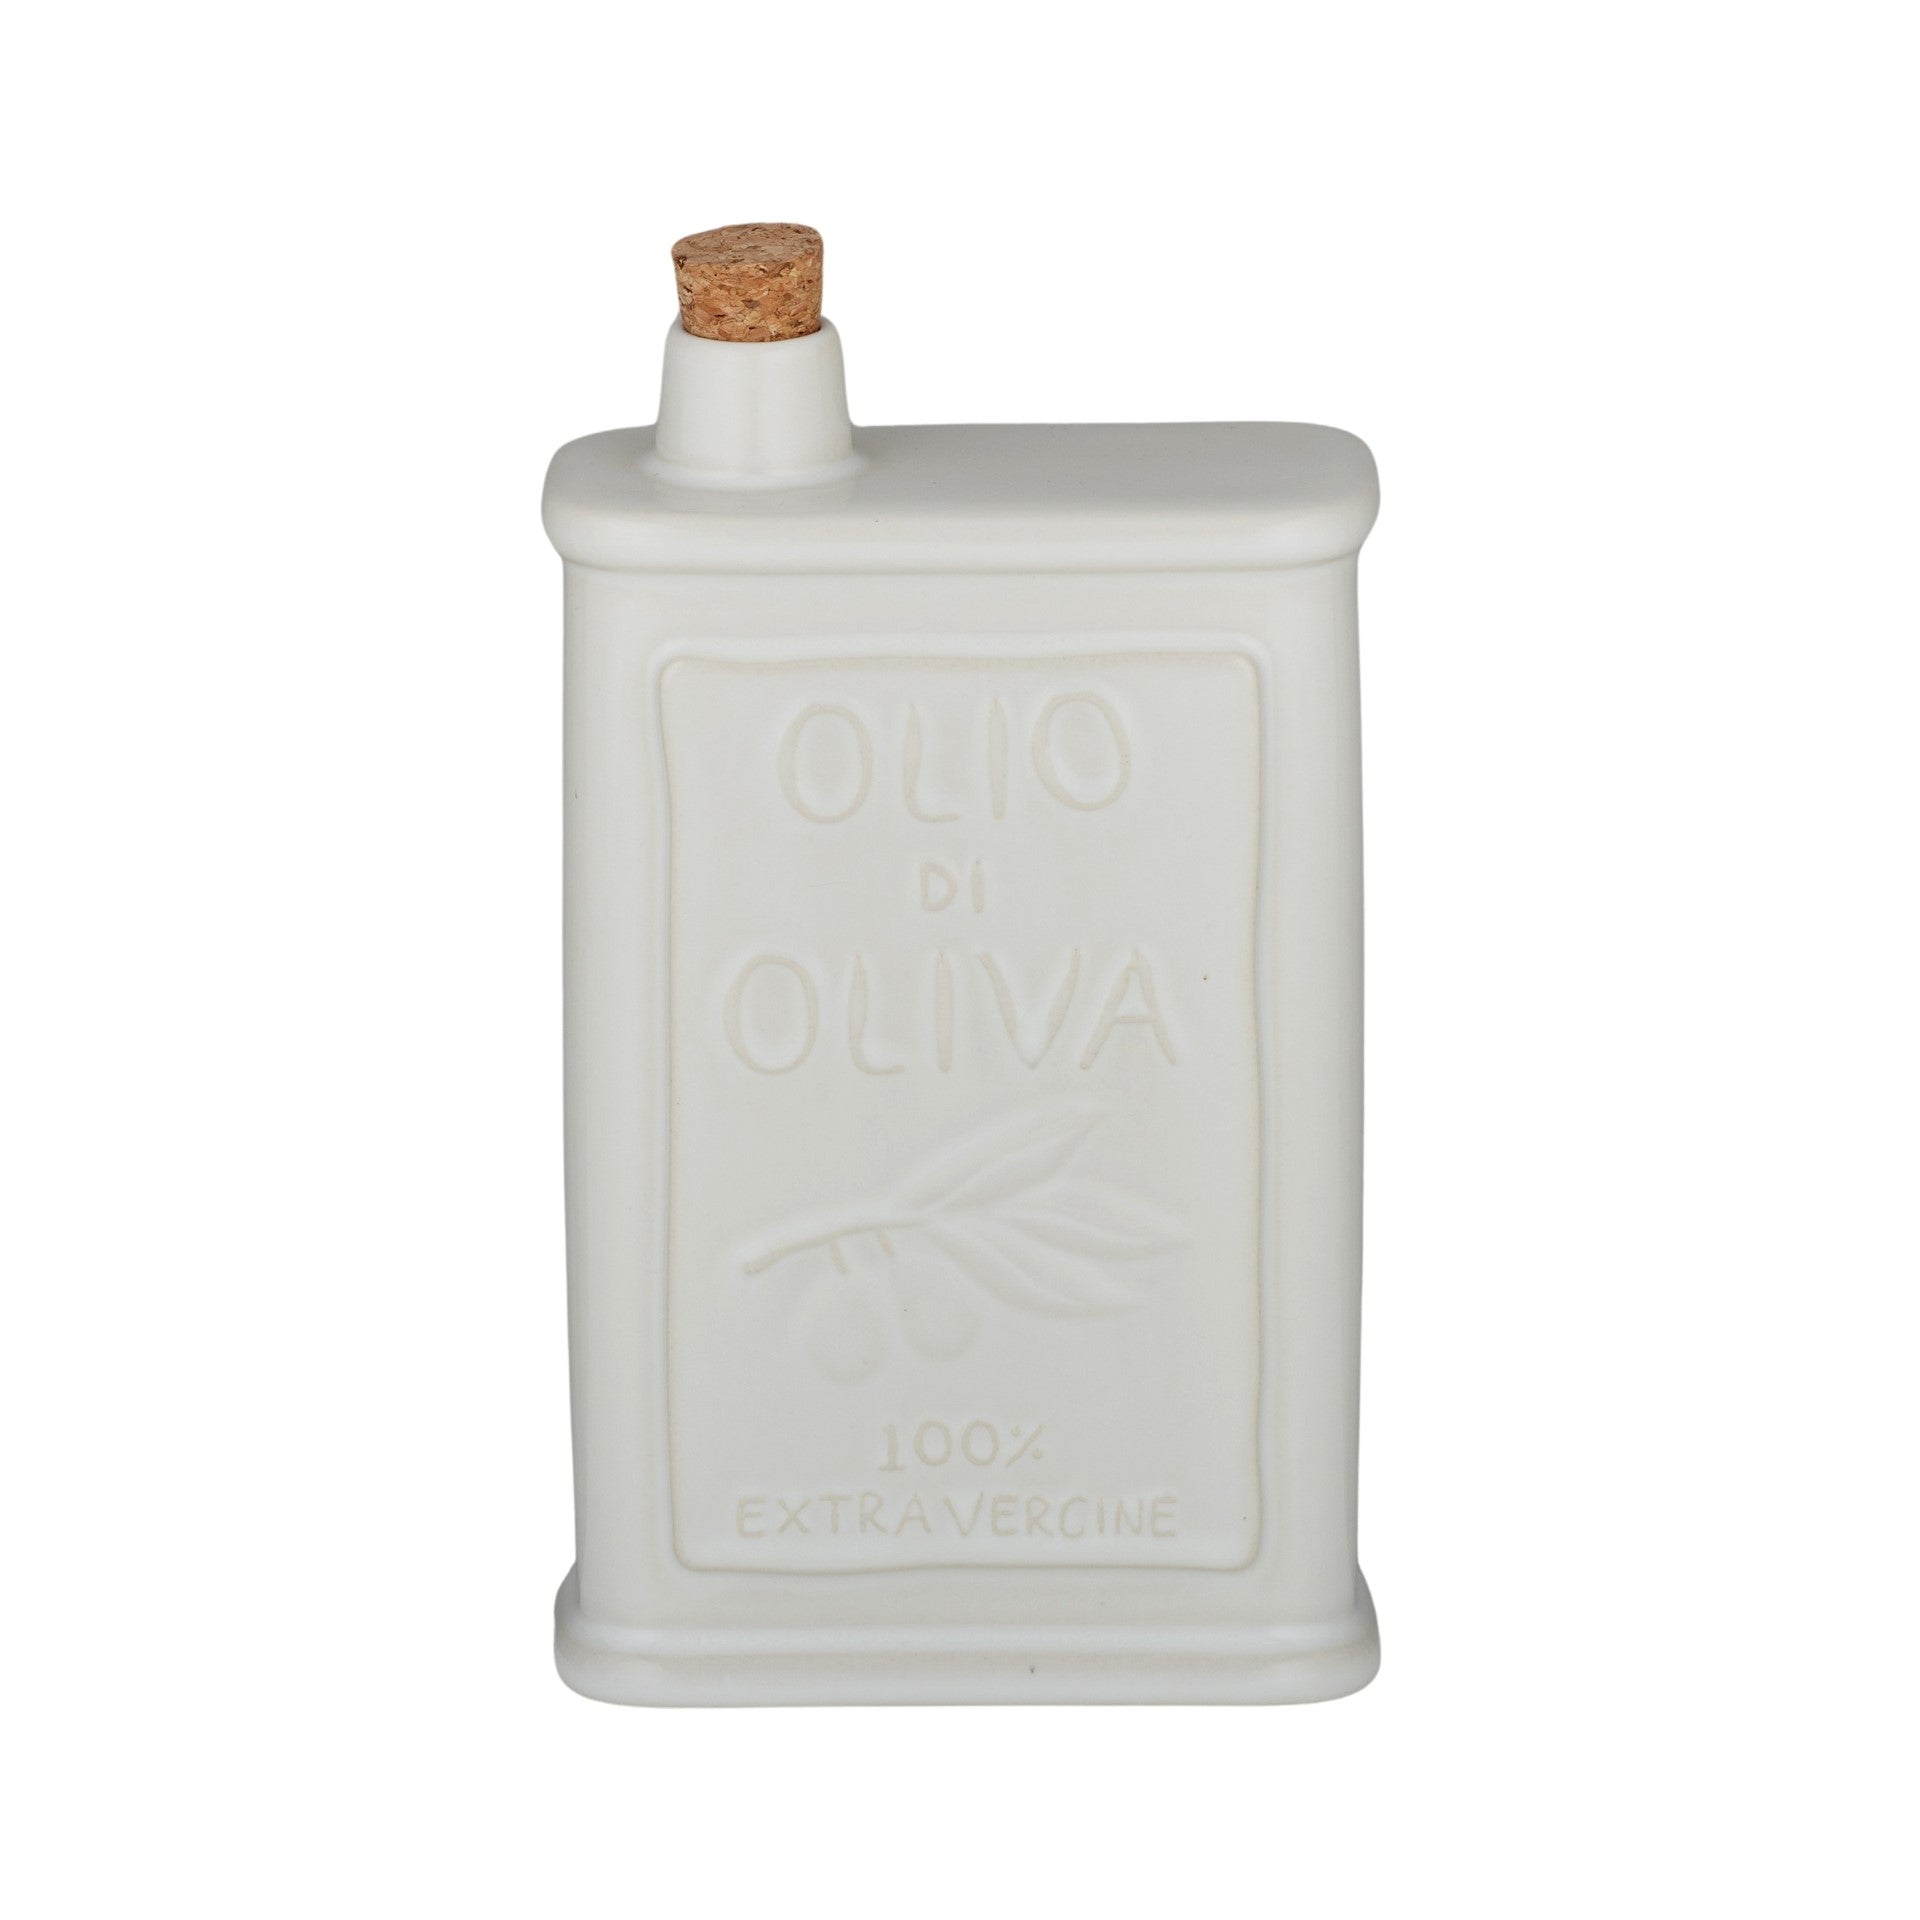 Olio Ceramic Oil Bottle